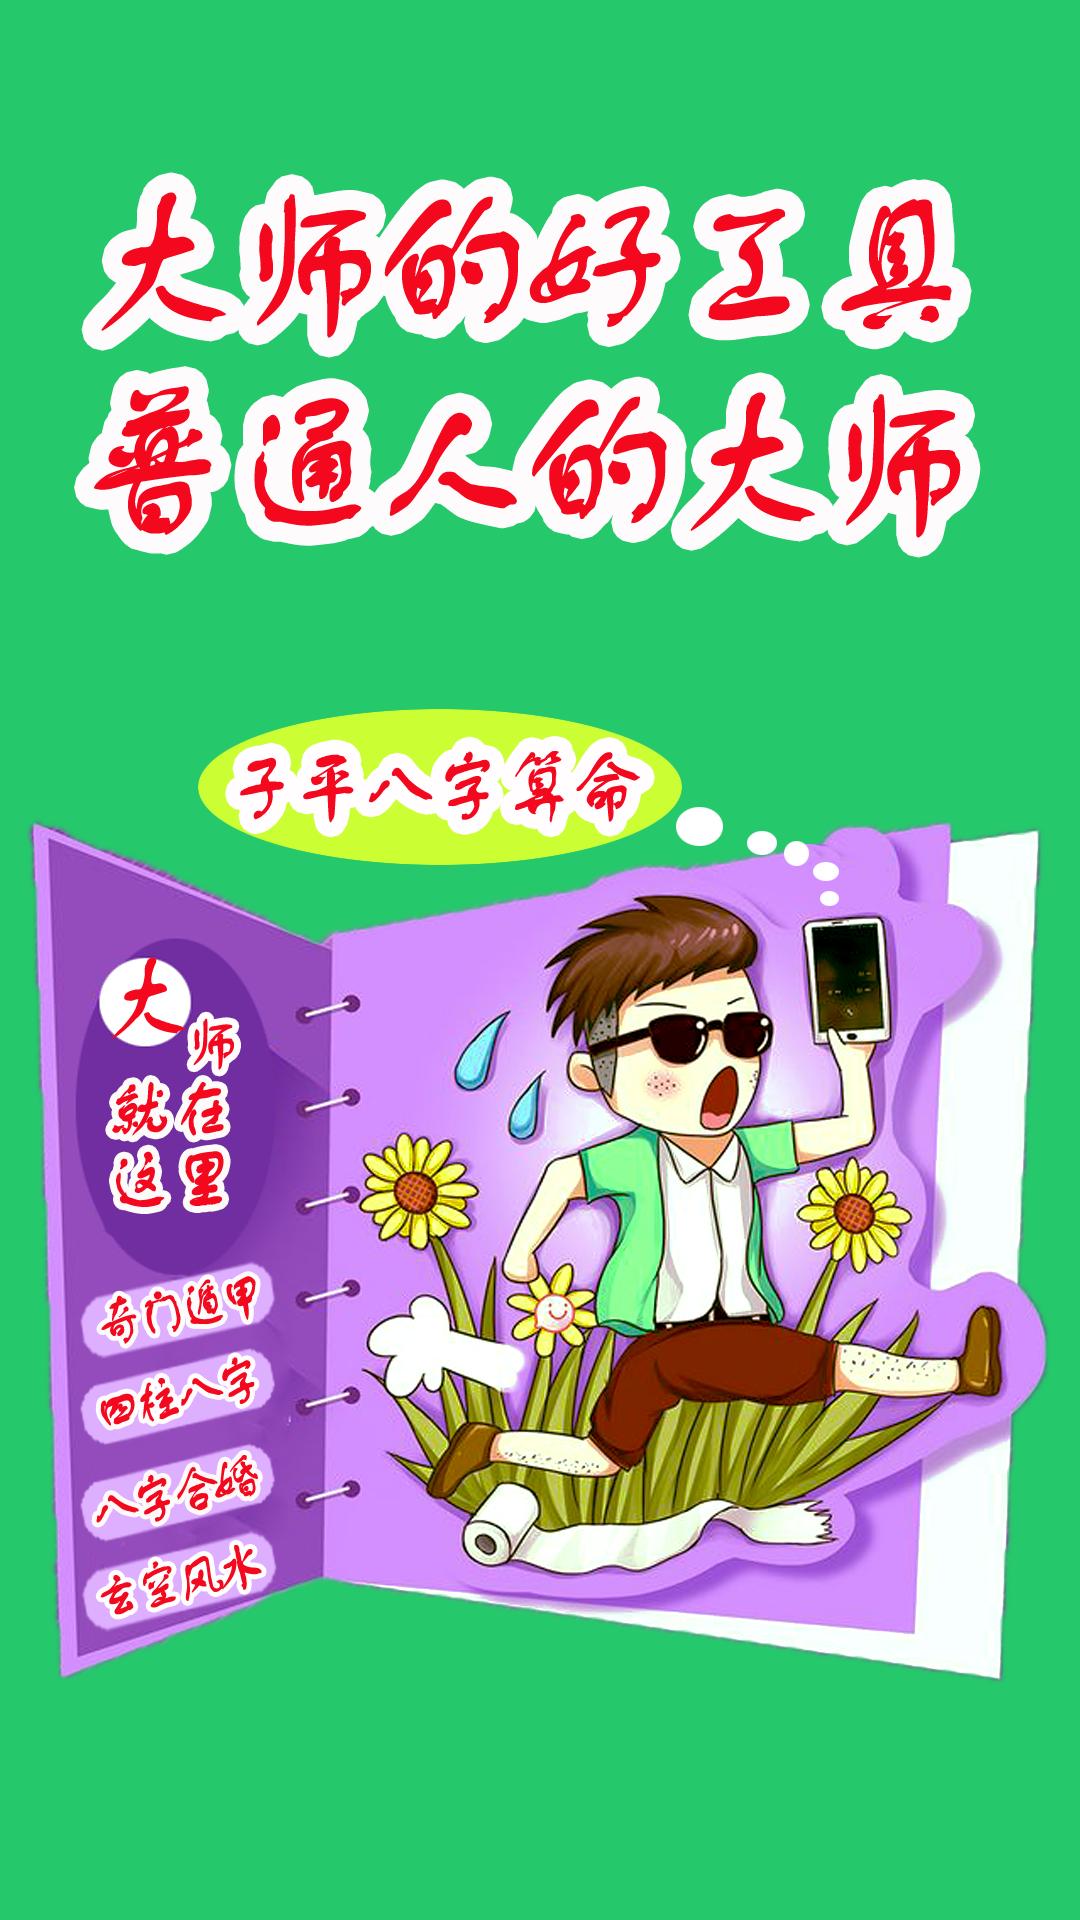 子平八字算命for Android Apk Download